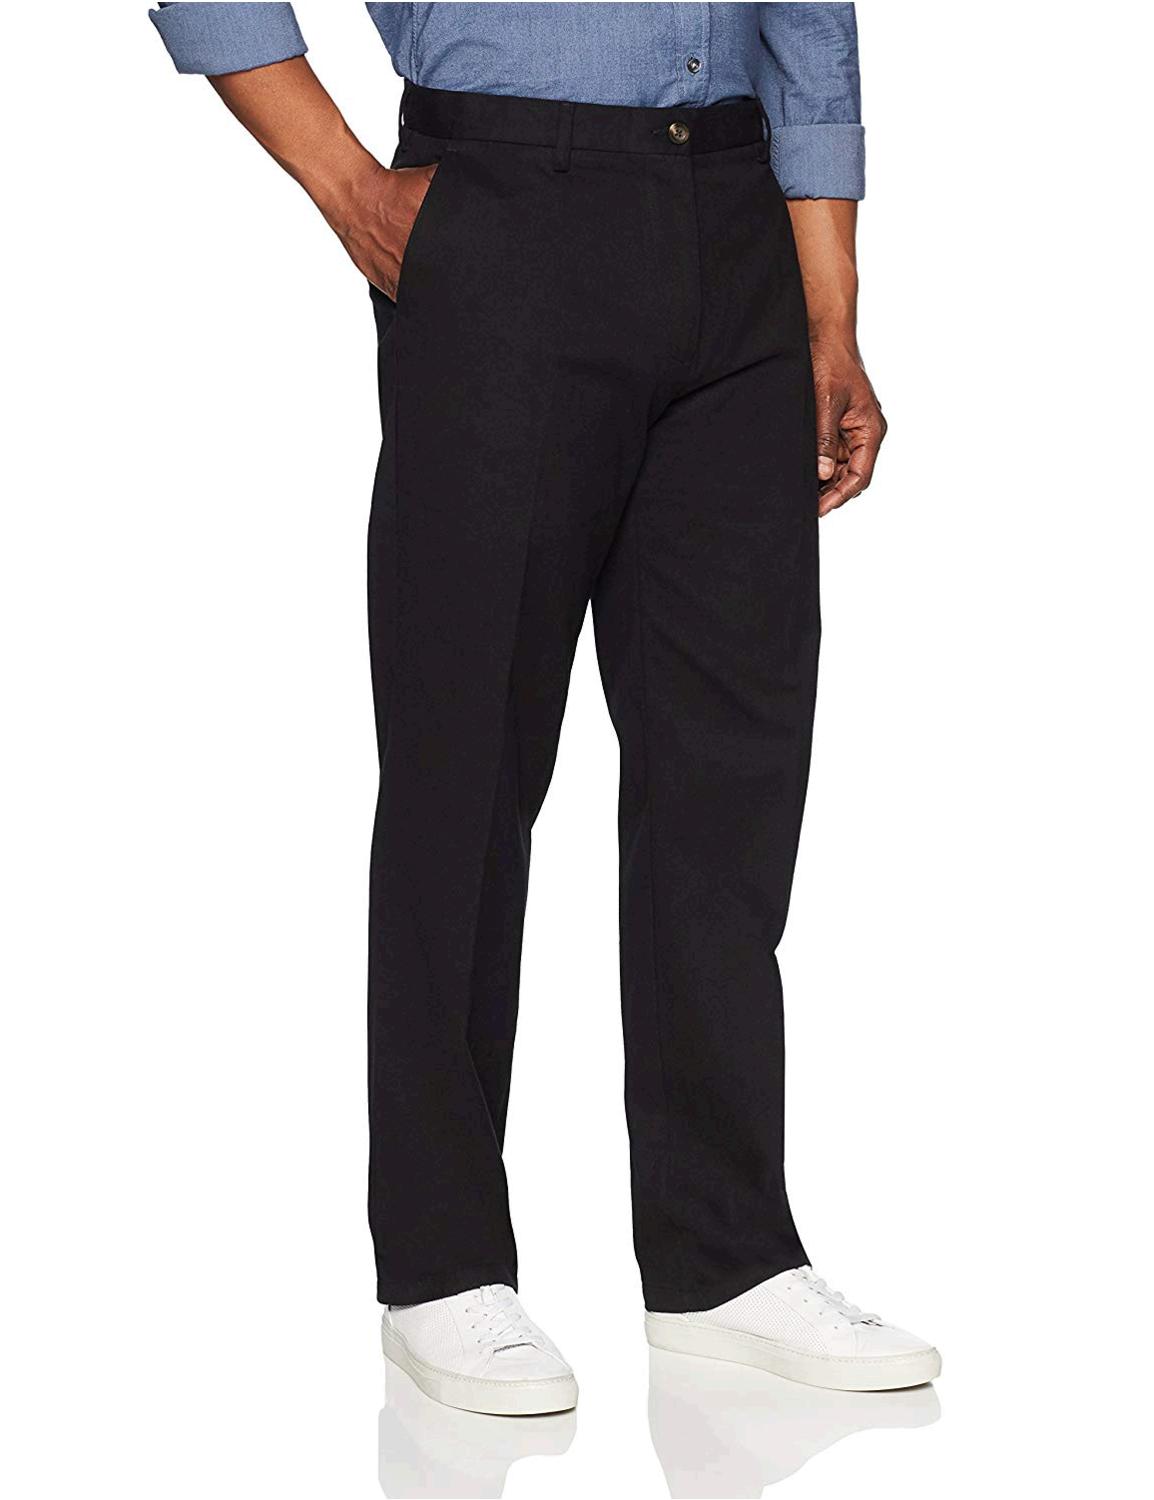 Essentials Men's Classic-Fit, True Black, Size 34W x 28L uwb2 | eBay